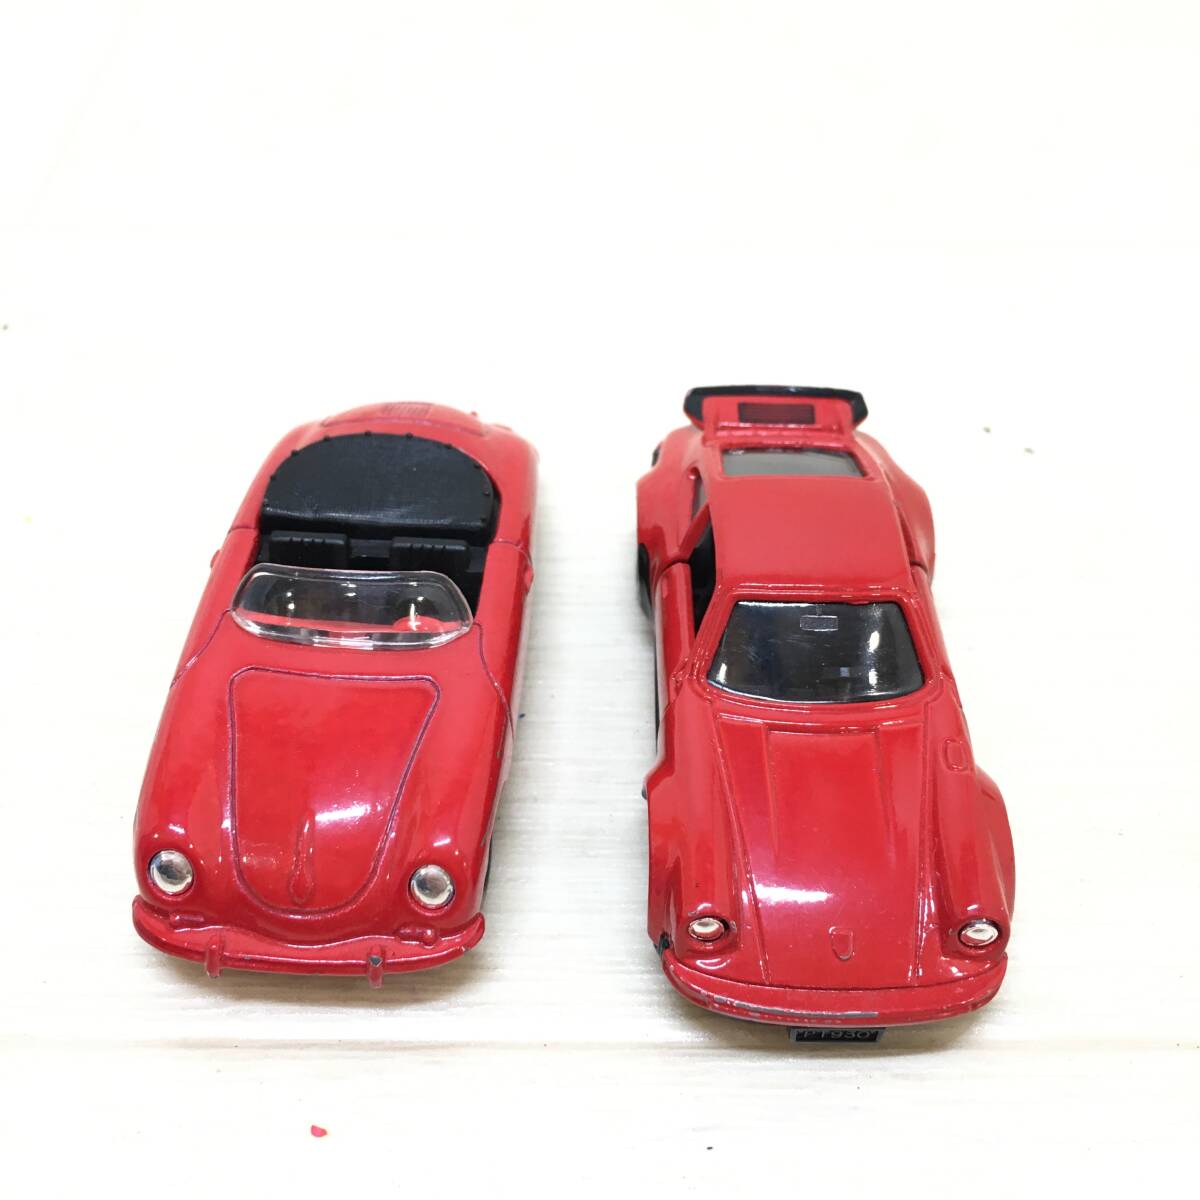 ΣTOMICA トミカ ミニカー ポルシェ レッド 赤色 オープンカー 車 乗用車 おもちゃ 乗り物 コレクション 長期保管 現状品ΣC52817_画像2